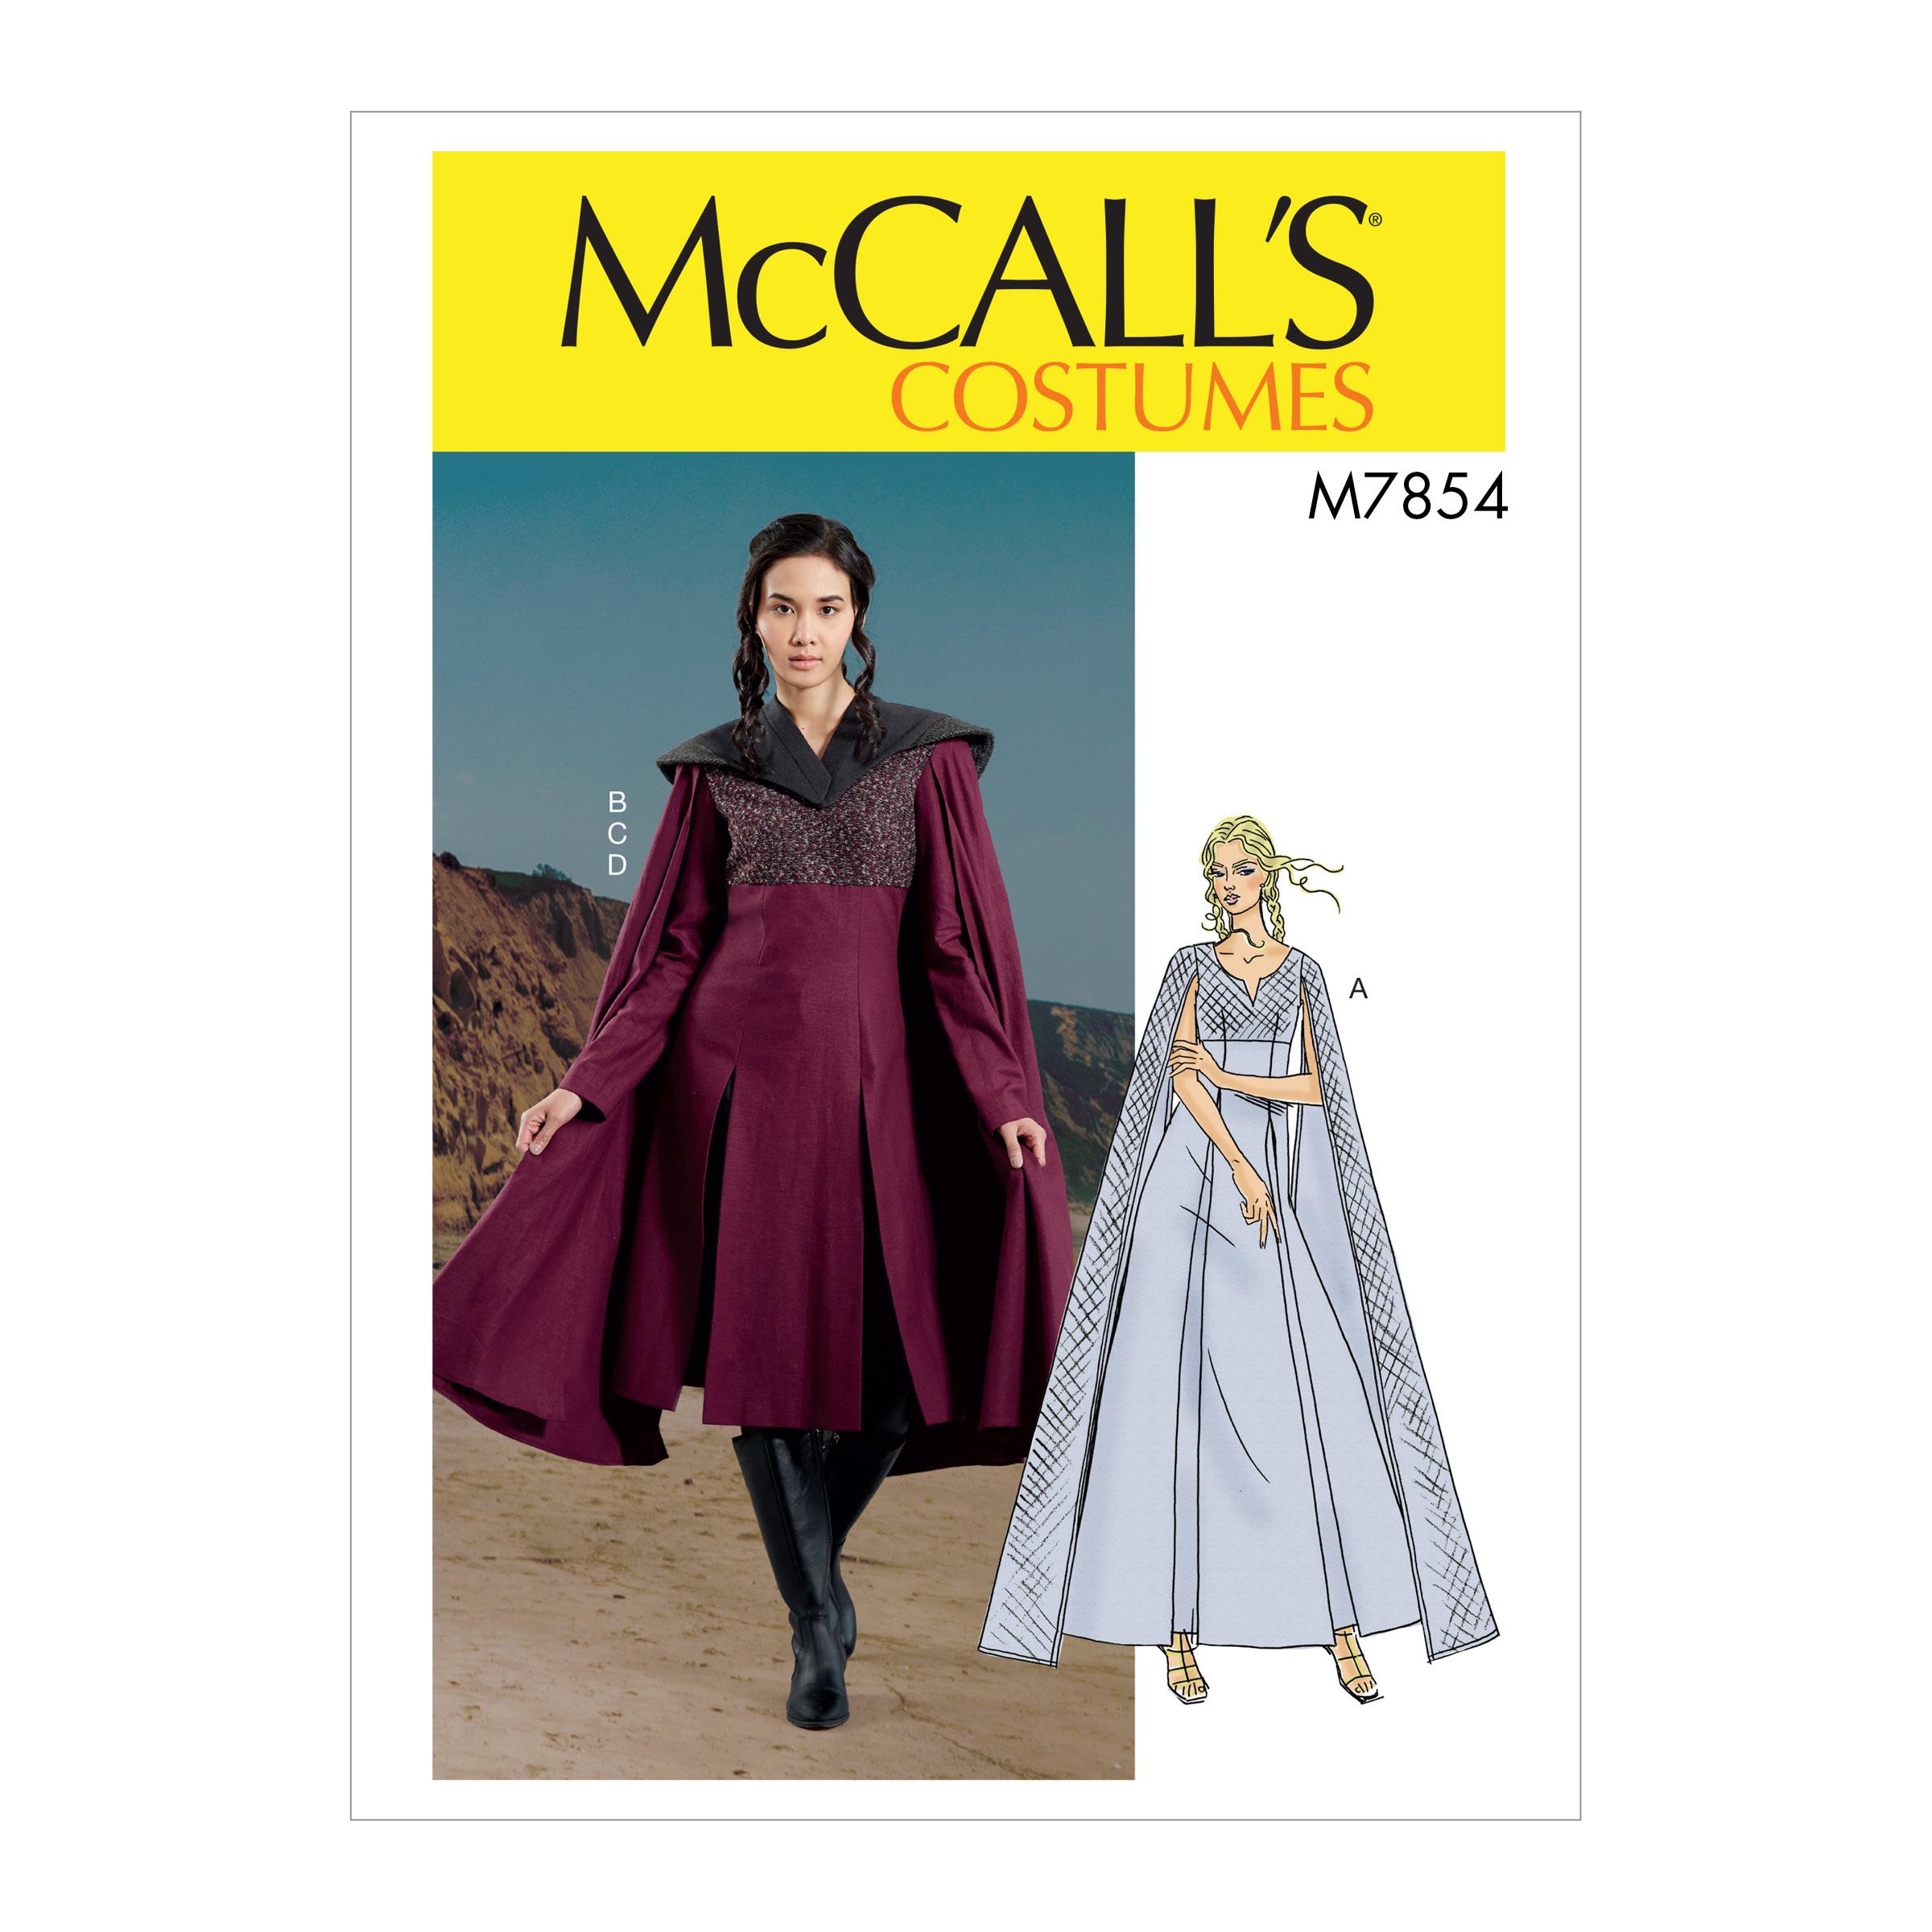 McCalls M7854 Costumes